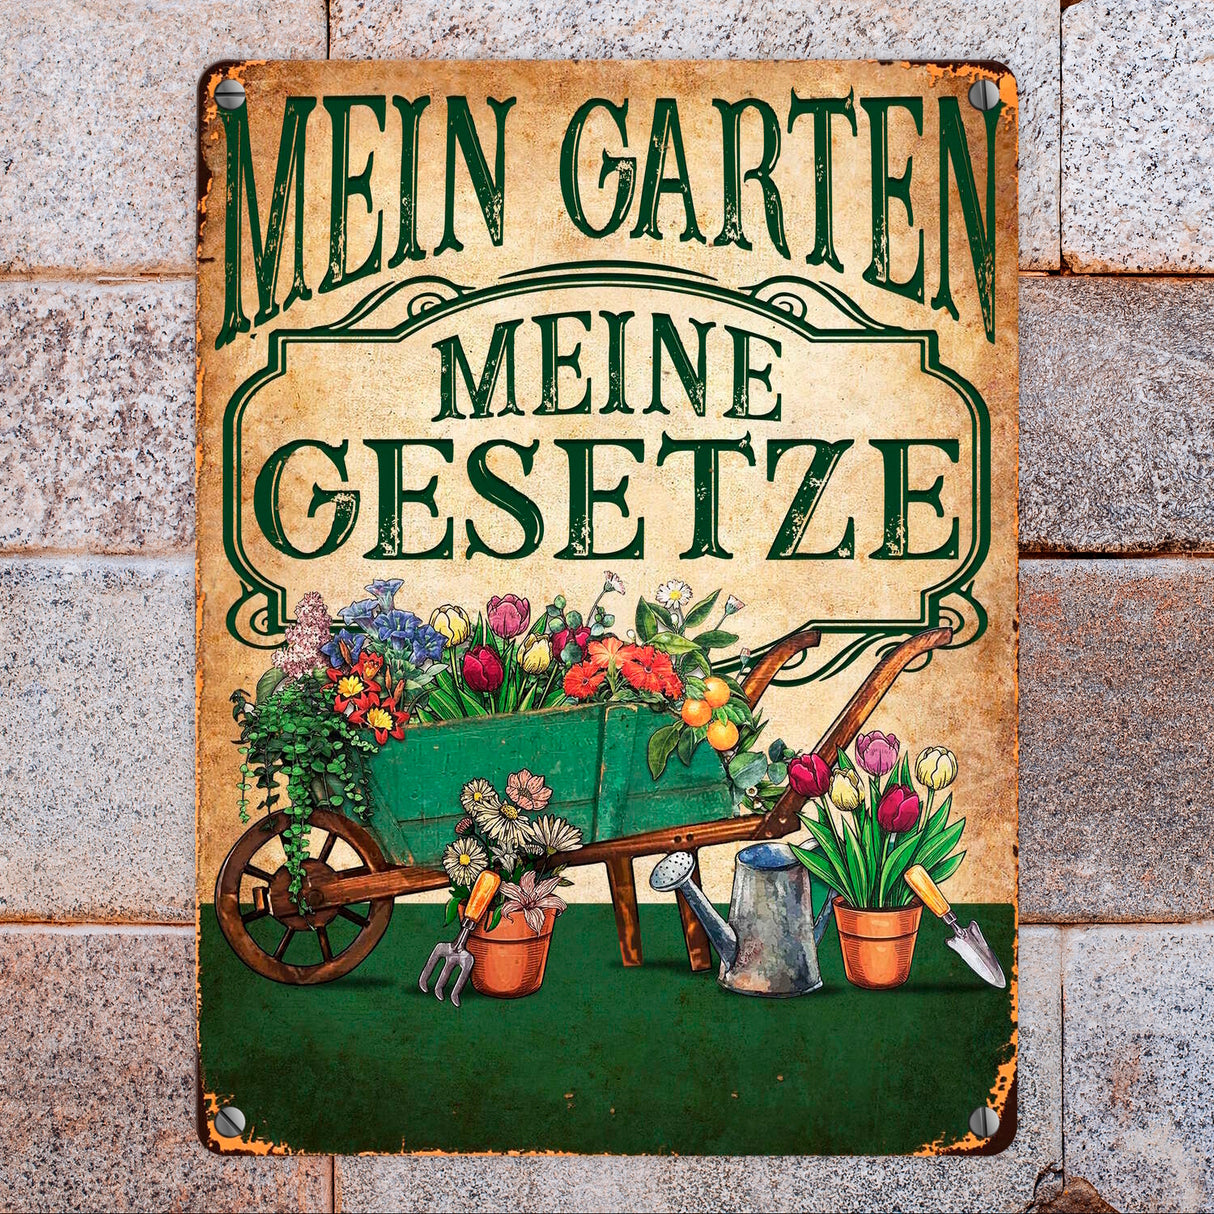 Mein Garten Meine Gesetze Metallschild in 15x20 cm mit Blumenwagen